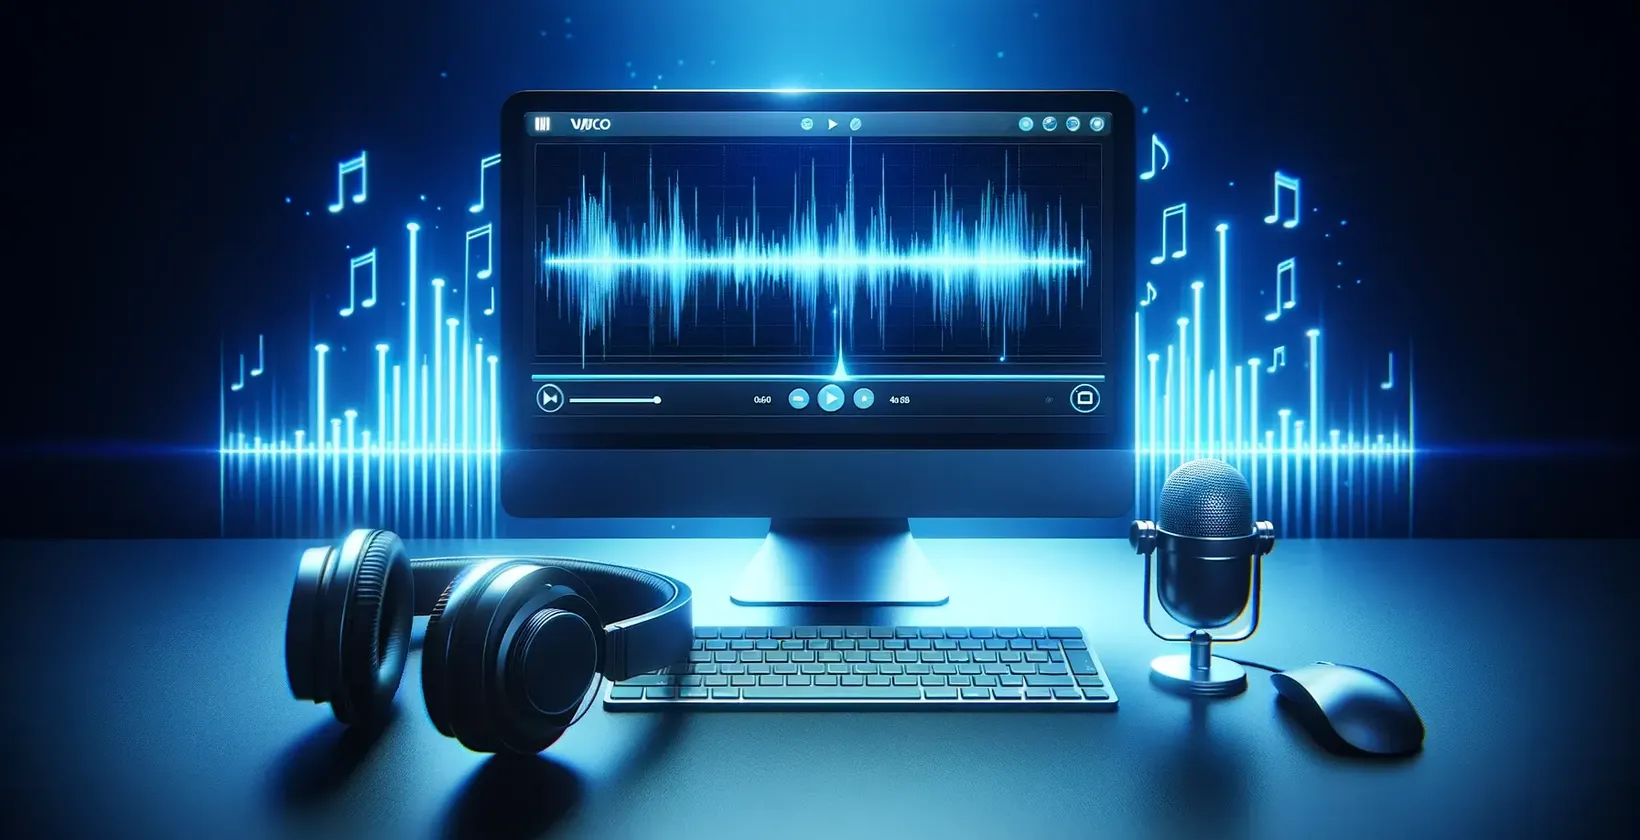 Softver za automatsku transkripciju predstavljen u digitalnom radnom prostoru s računalom, slušalicama i stolnim mikrofonom.